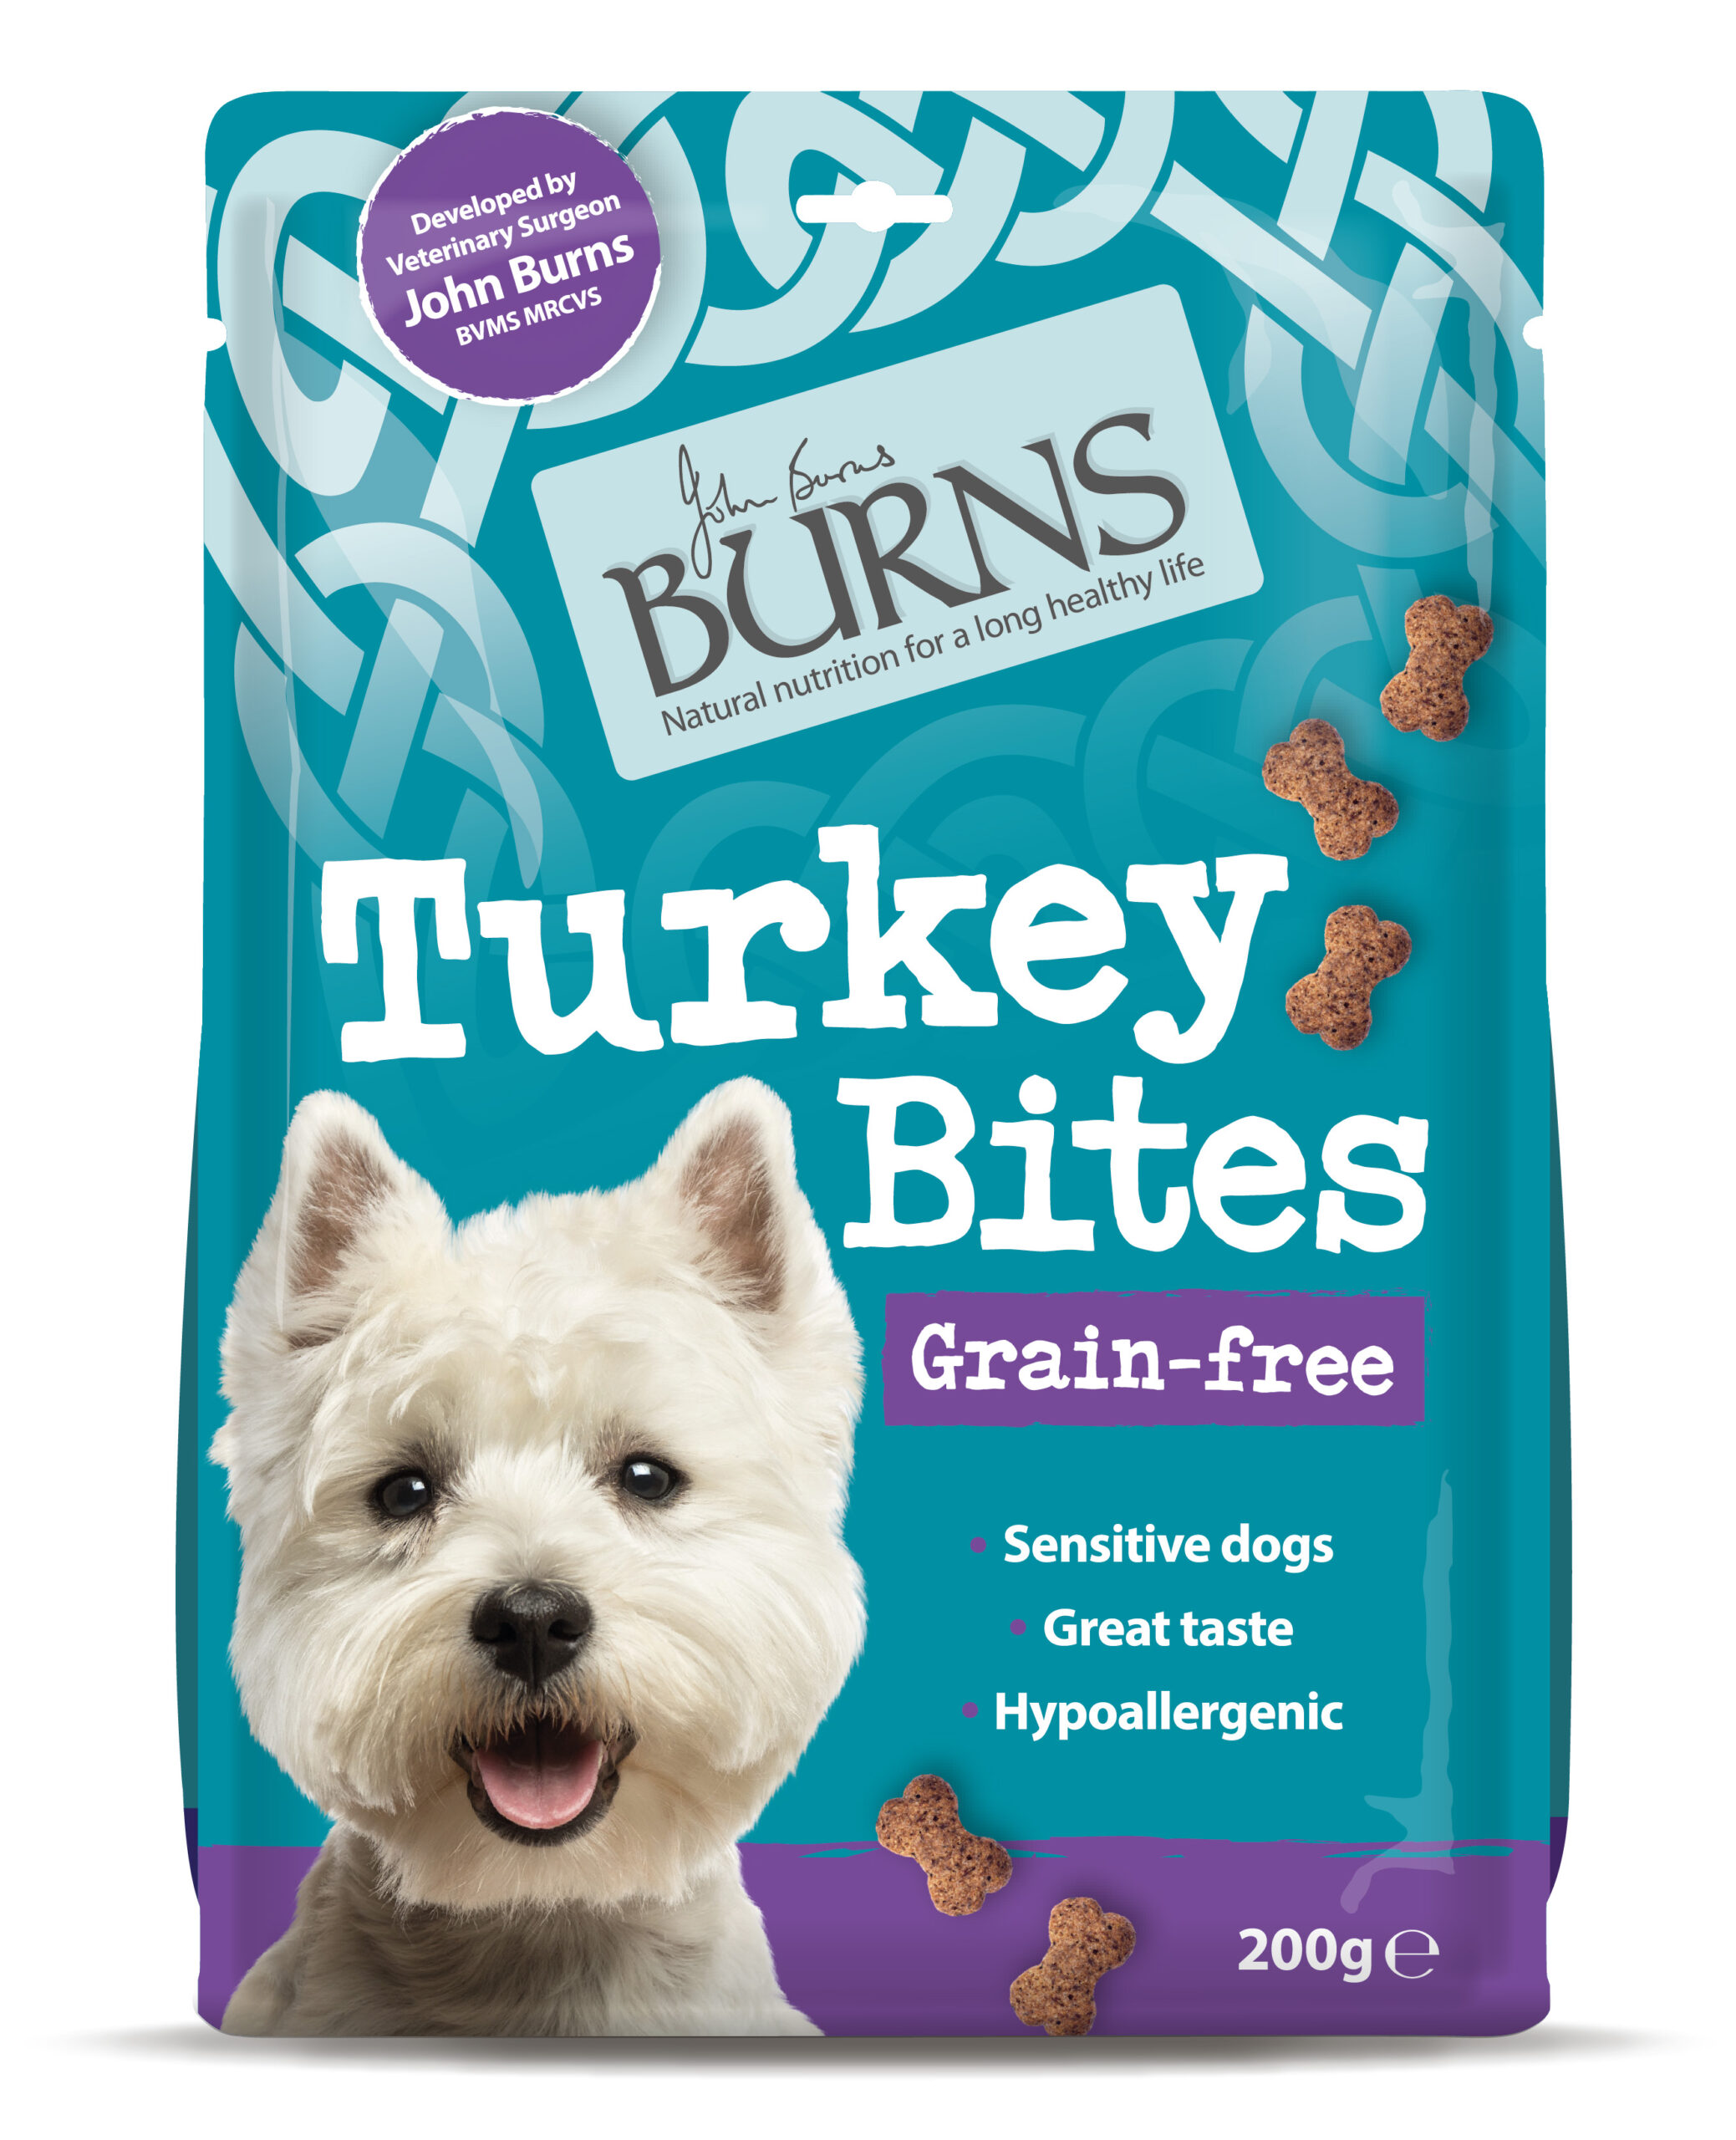 Suppliers of Grain-Free Turkey Bites